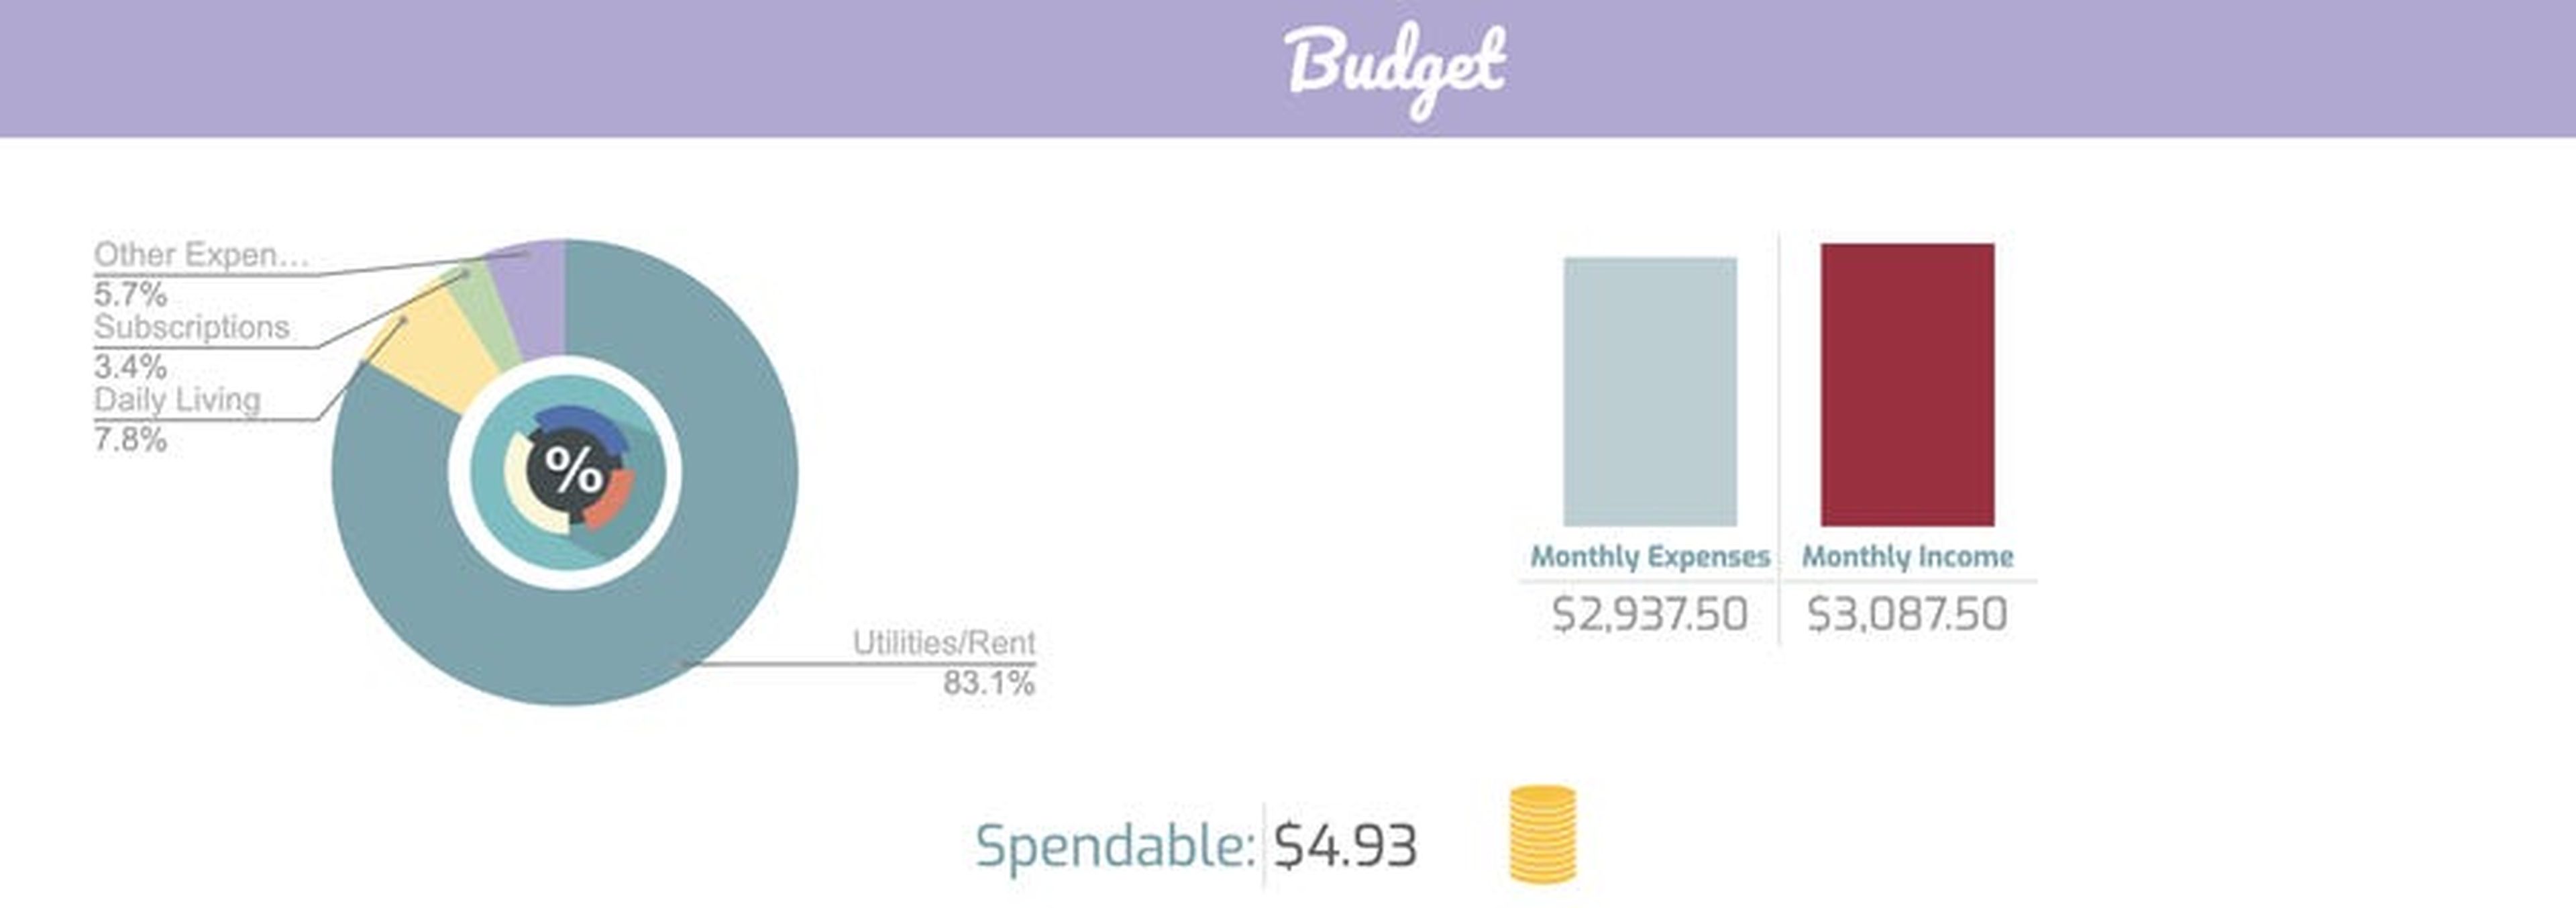 Hay una cantidad diaria para gastar en la parte superior del presupuesto que se puede personalizar.